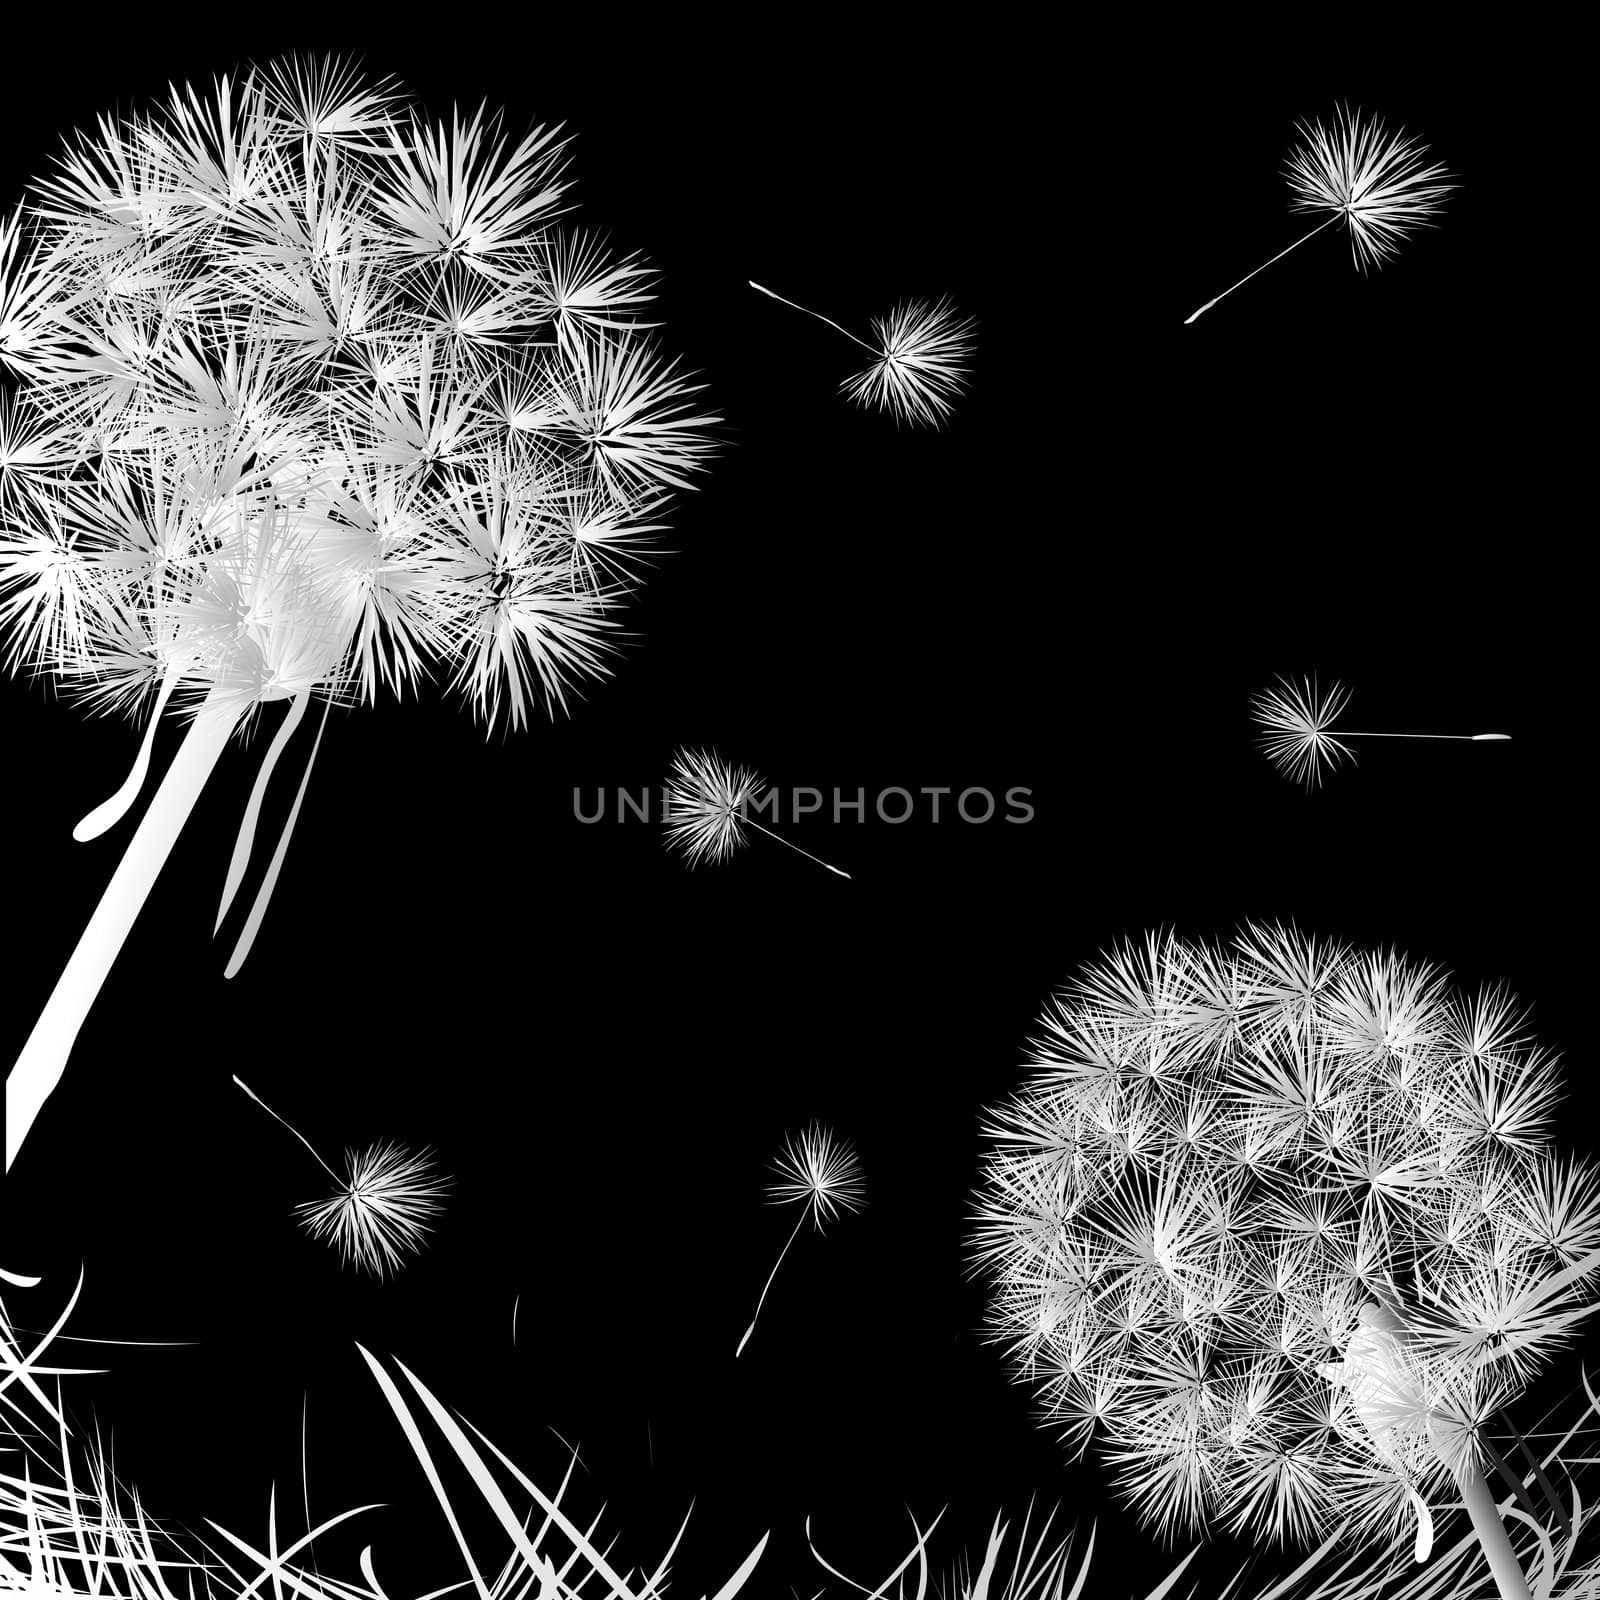 Dandelions by Lirch